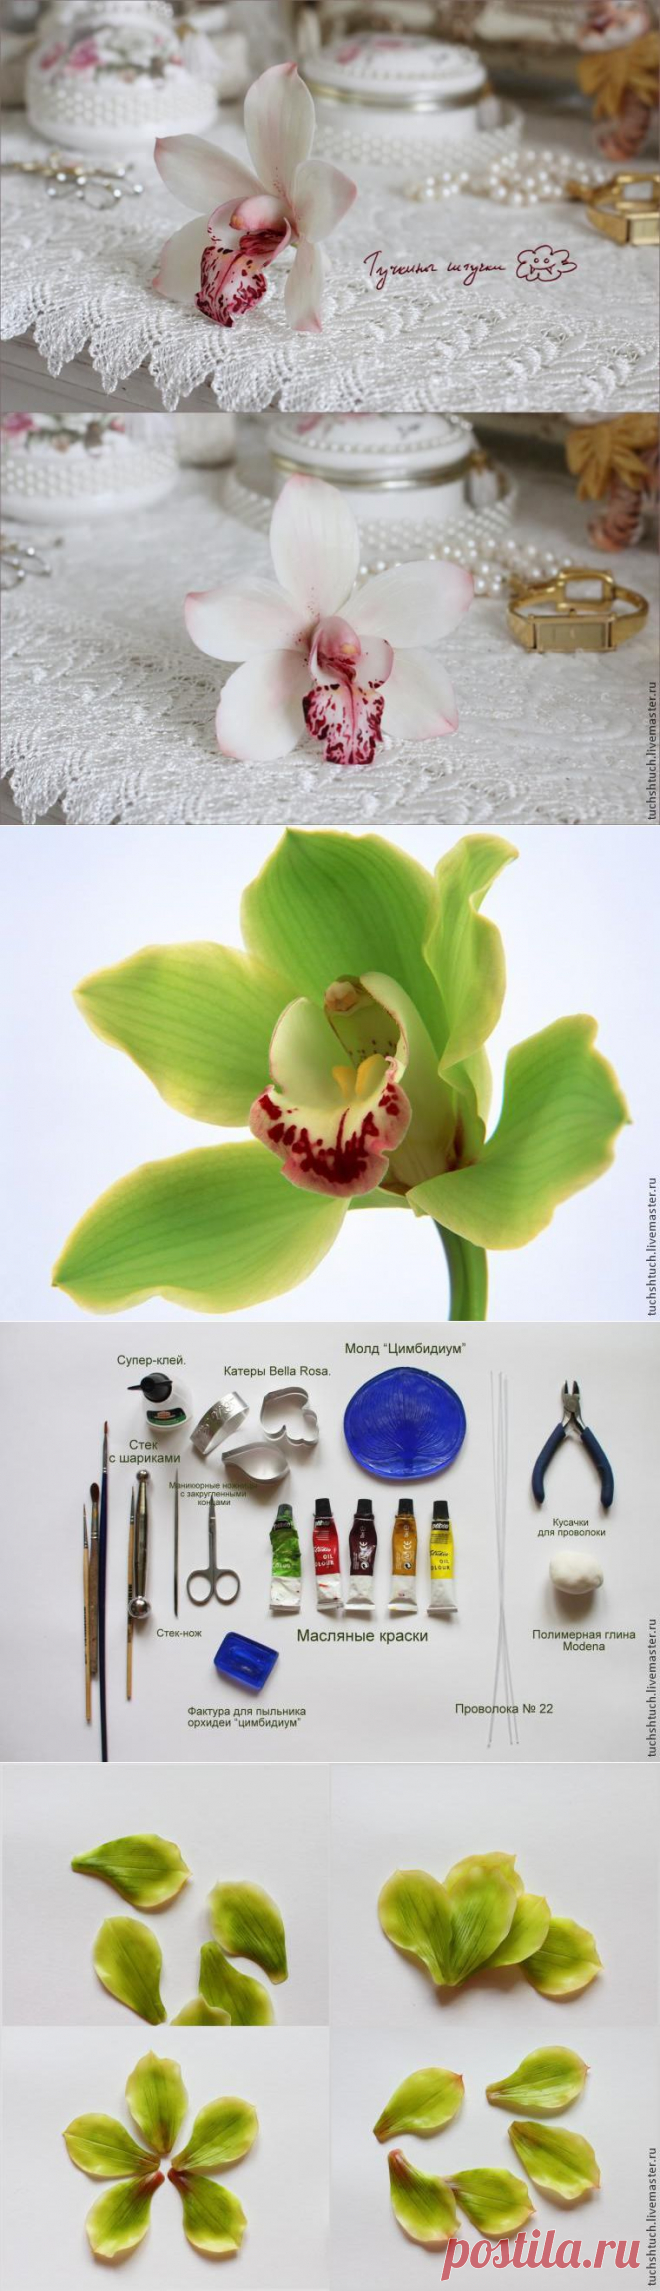 Лепка орхидеи цимбидиум из полимерной глины - Ярмарка Мастеров - ручная работа, handmade